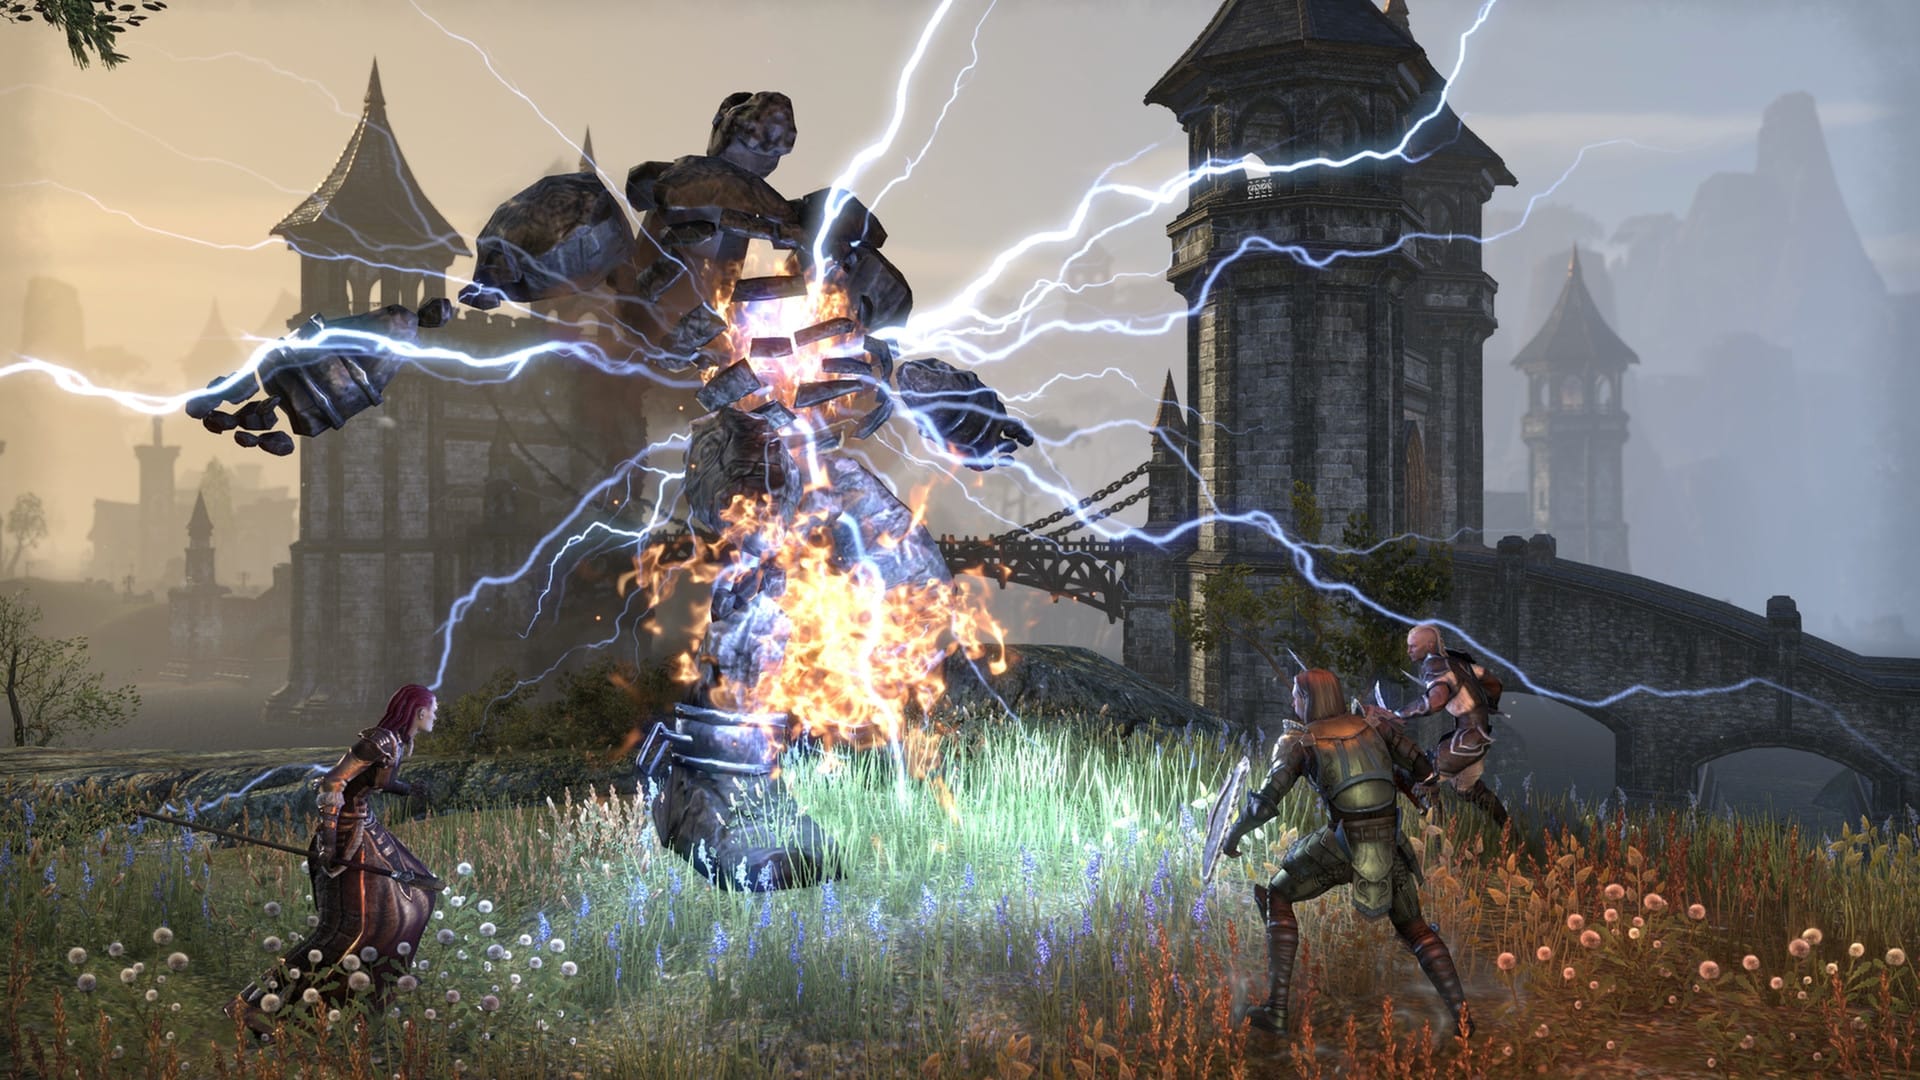 Beste MMORPG -Spiele: The Elder Scrolls online. Das Bild zeigt eine Gruppe von drei Charakteren, die gegen eine große Steinkreatur steigen, wobei der Strom herauskommt